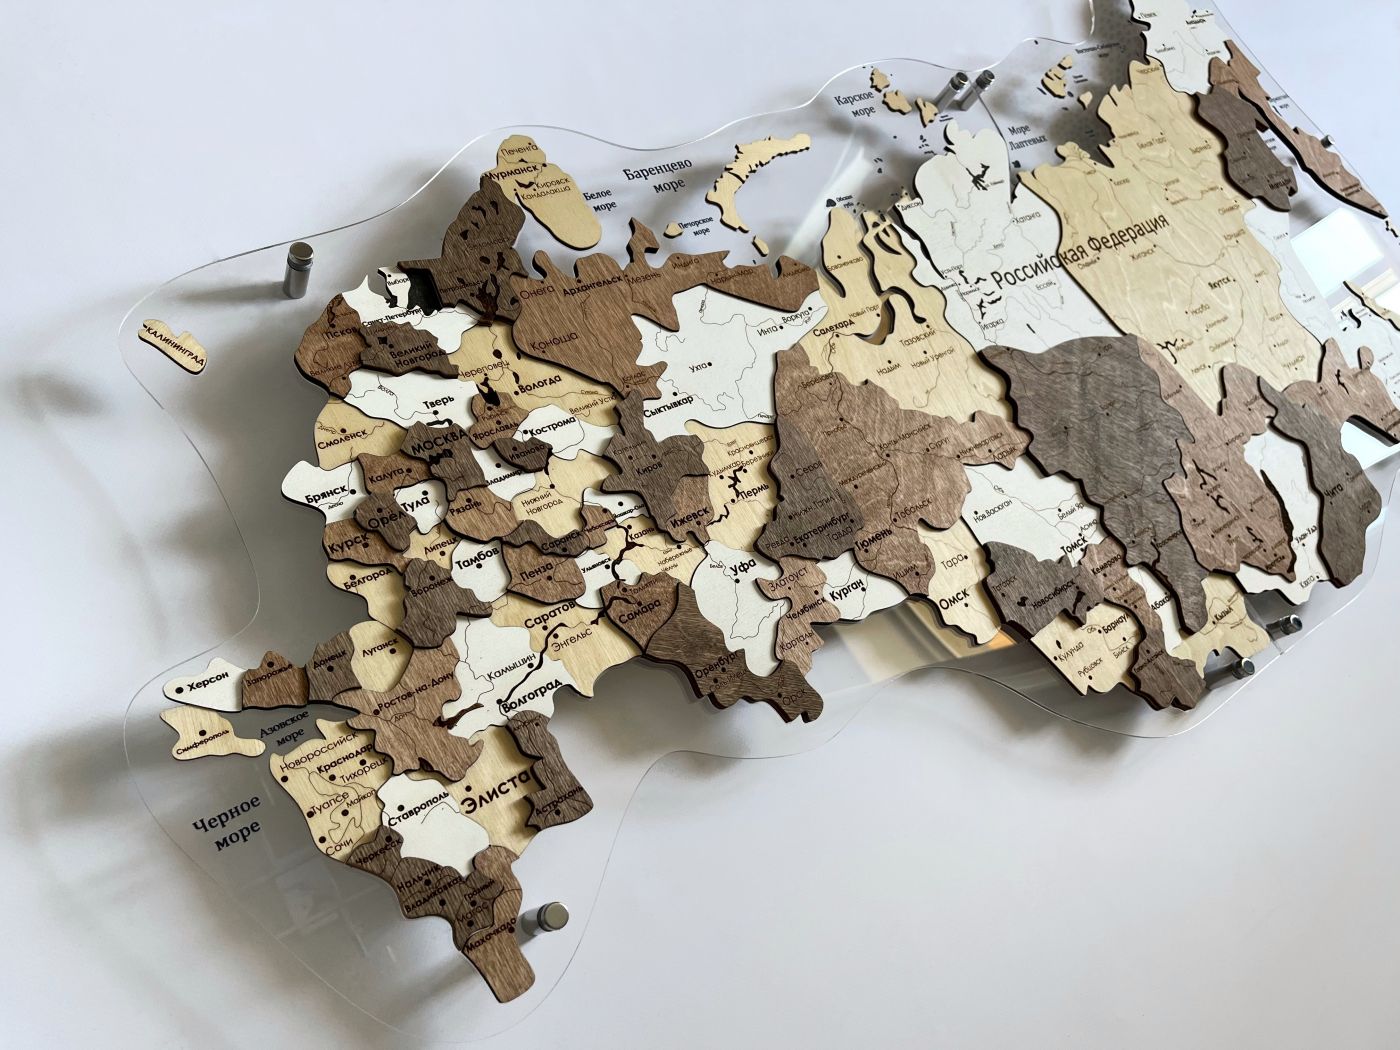 Цвет "Дербент", 150х83 см, Многоуровневая карта РОССИИ из дерева, на подложке из орг.стекла, на русском языке, с полной гравировкой, с черной гравировкой на орг.стекле